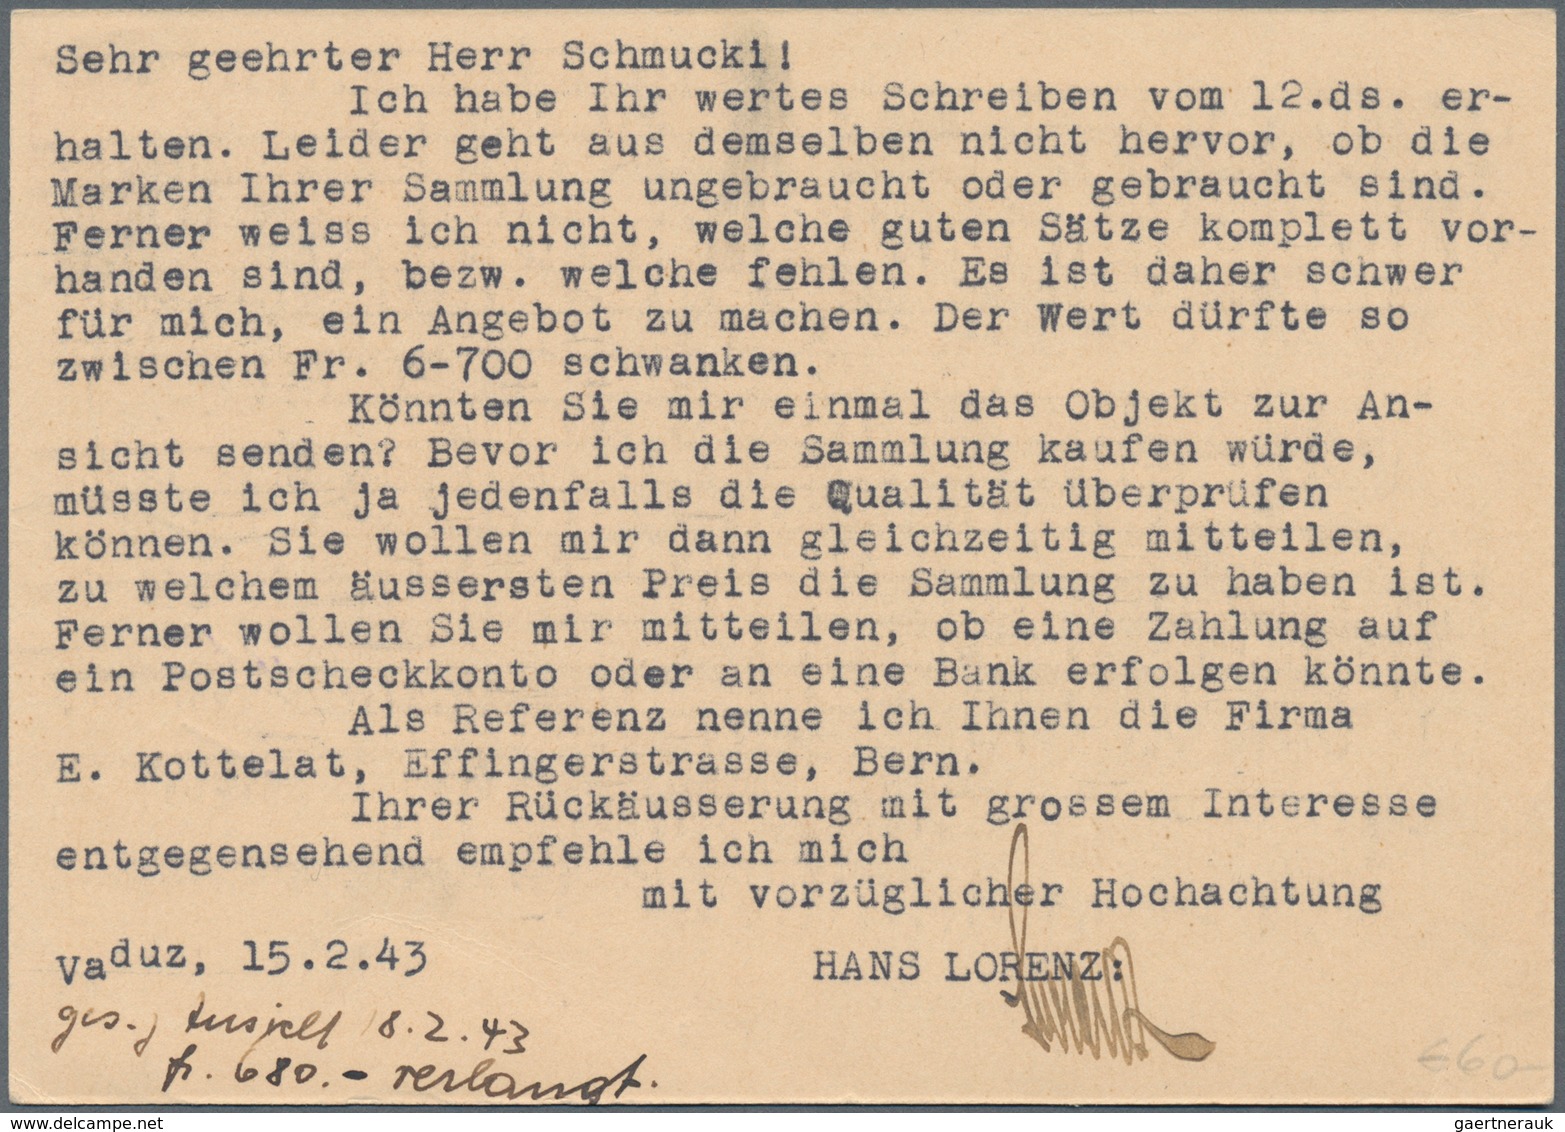 Liechtenstein - Ganzsachen: 1941, 10 Rp. Gämse mit Druckvermerk S.A.41, alle Bilder, 6 verschiedene